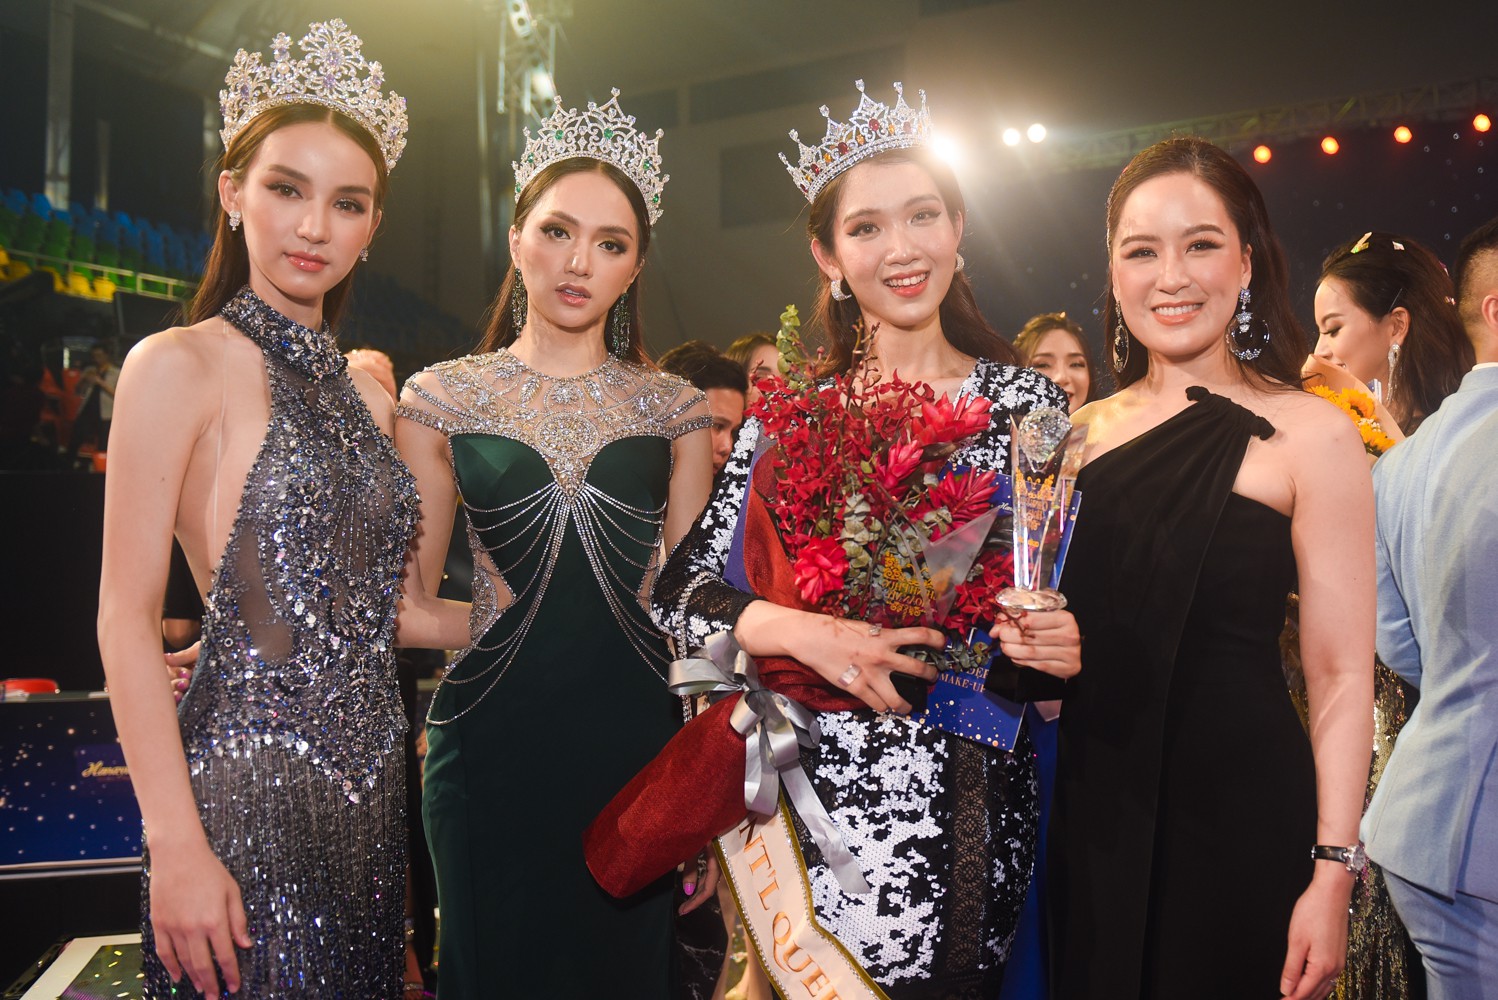 Chiêm ngưỡng nhan sắc ngọt ngào của cô gái kế vị Hương Giang đi thi Hoa hậu Chuyển giới Quốc tế 2019 - Ảnh 2.